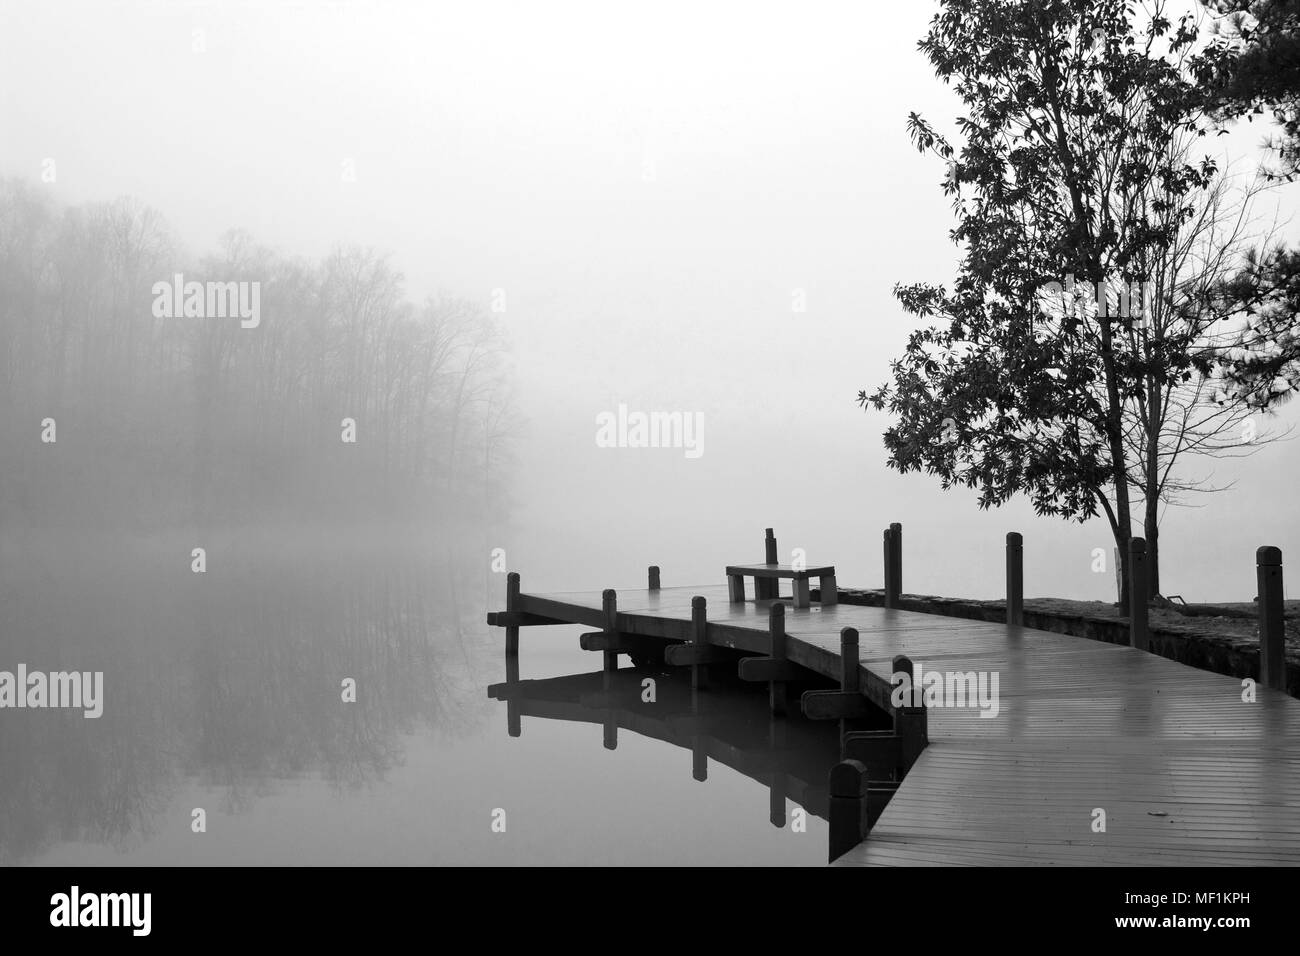 Une épaisse couche de brouillard recouvre une terrasse en bois et lac sur une froide journée d'hiver. Banque D'Images